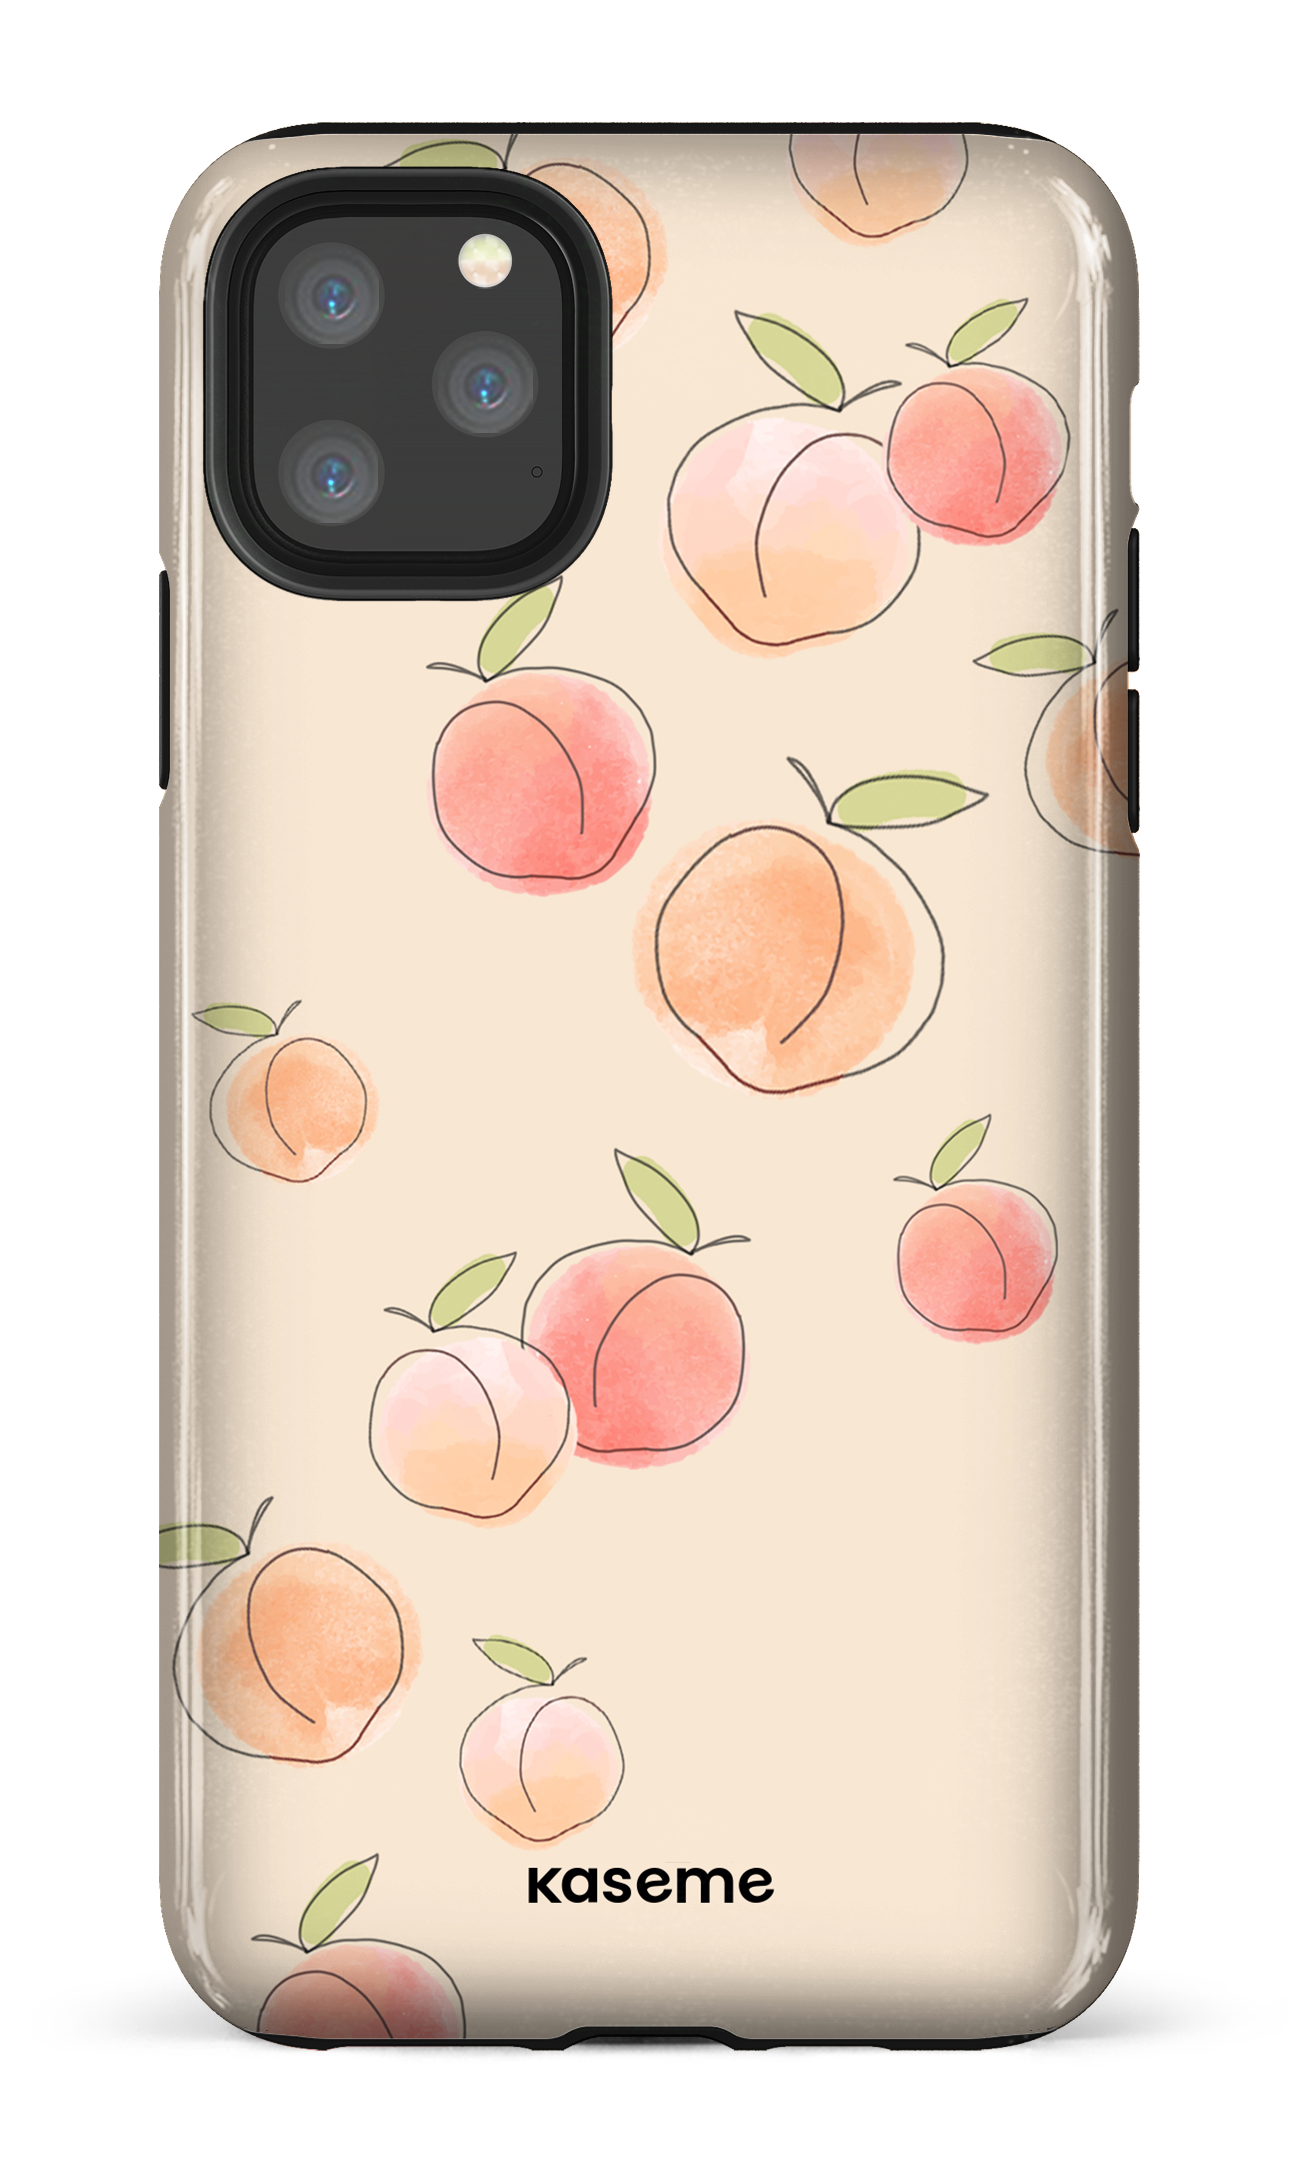 Peachy - iPhone 11 Pro Max